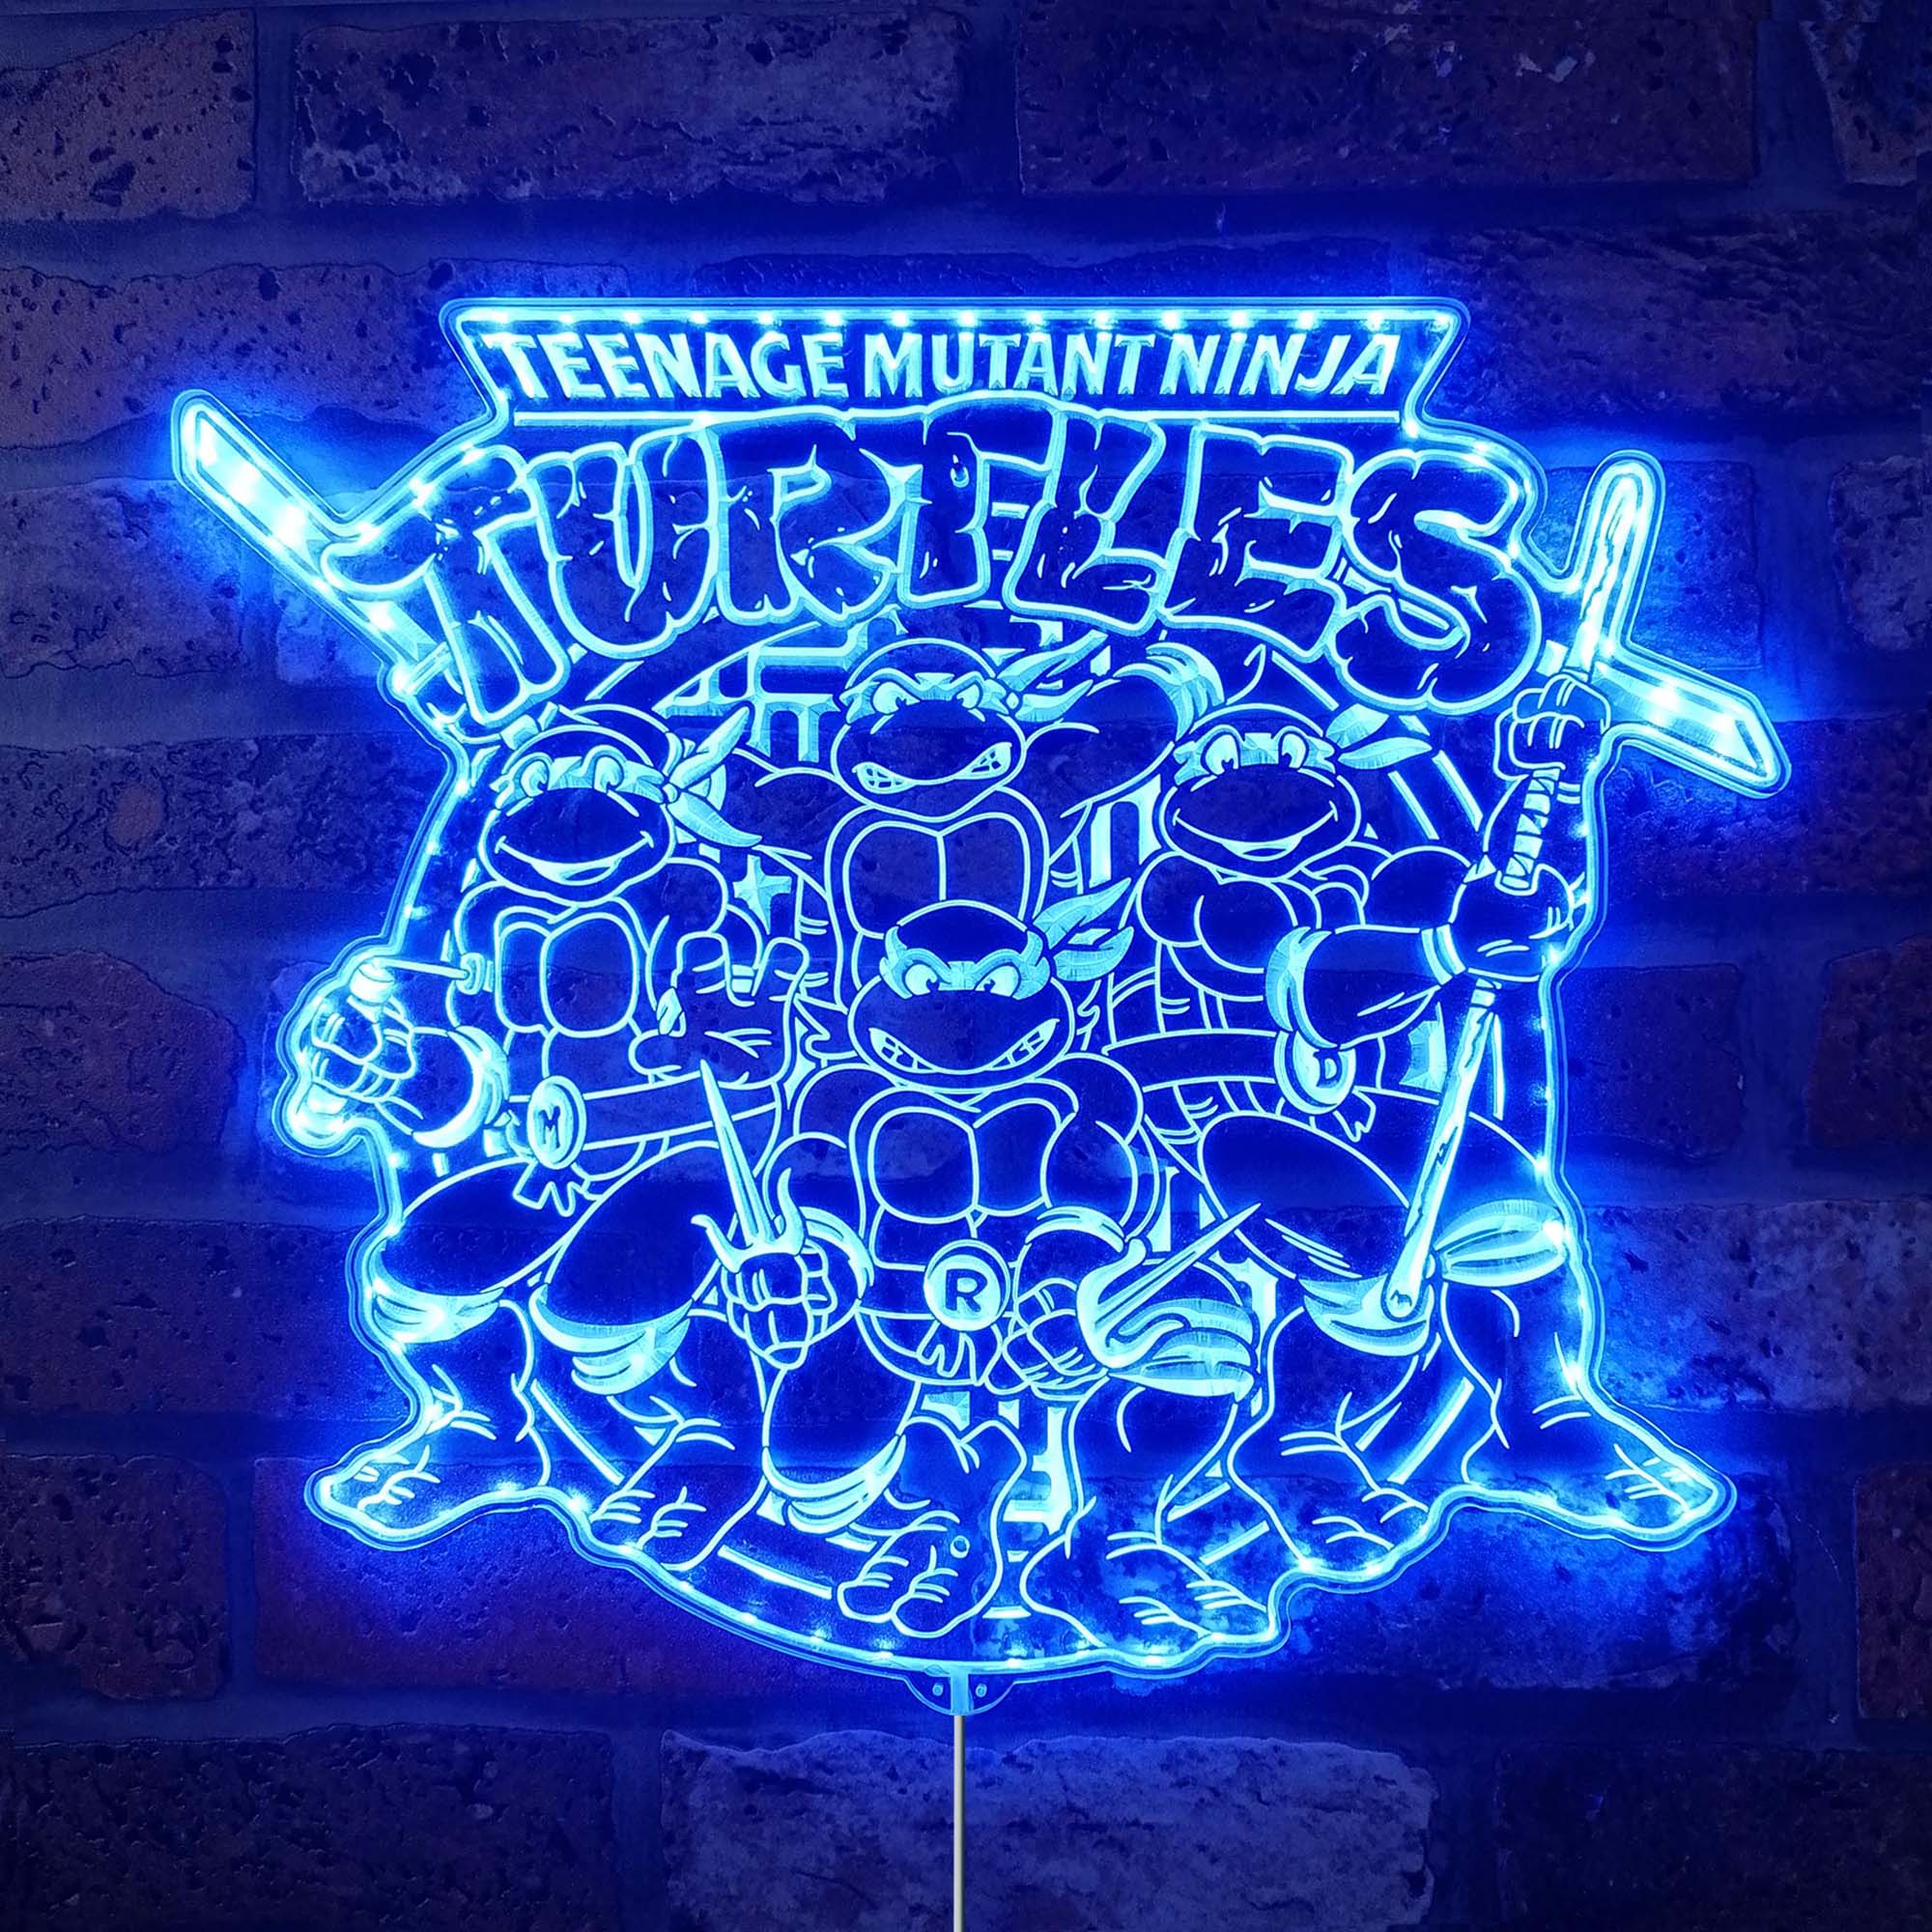 Teenage Mutant Ninja Turtles Dynamic RGB Edge Lit LED Sign